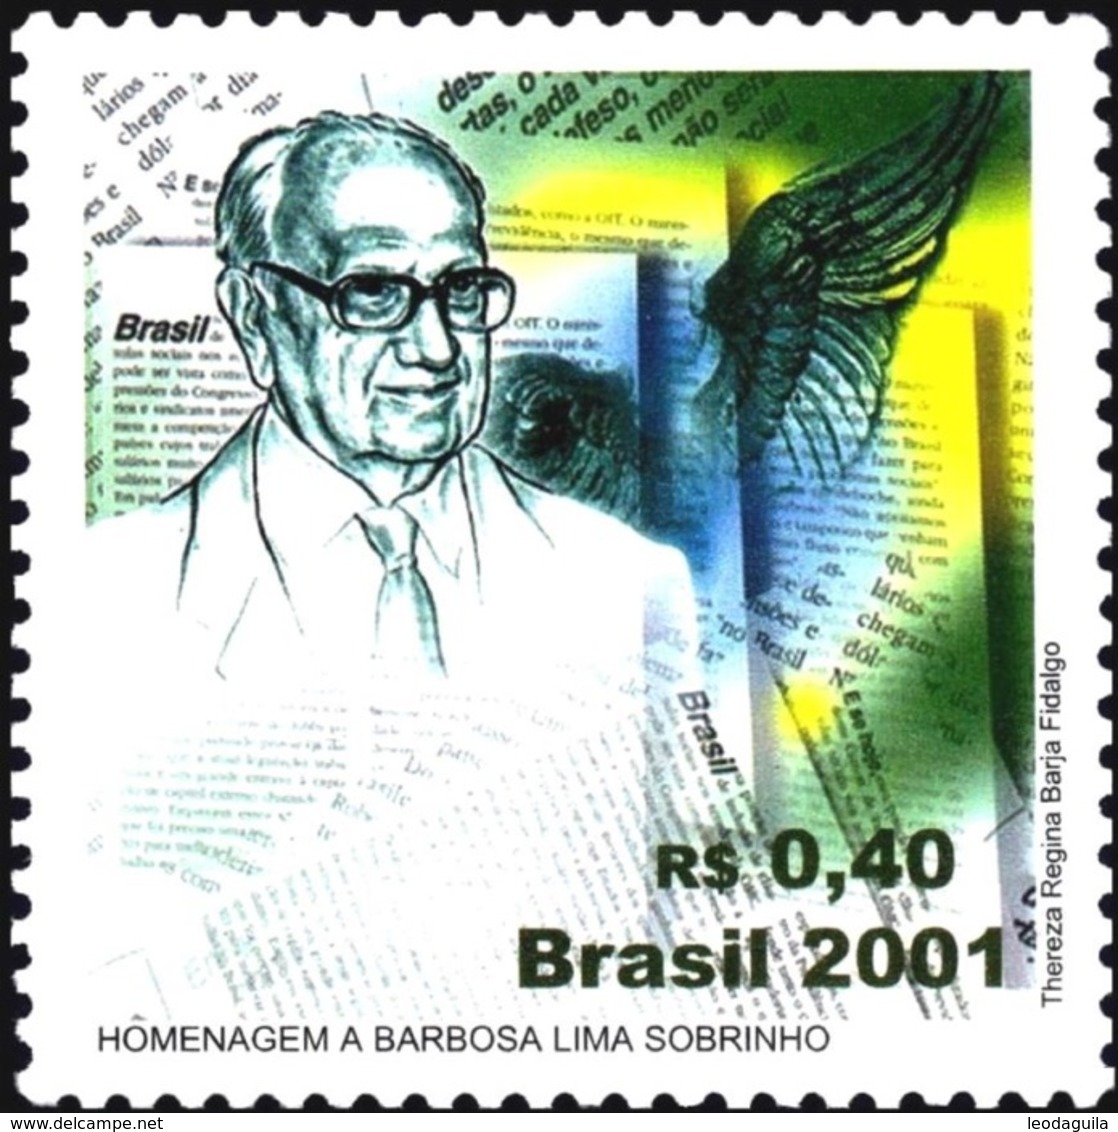 BRAZIL #2800  - HOMMAGE TO WRITER  BARBOSA LIMA SOBRINHO  -  1v  2001  - MINT - Ongebruikt